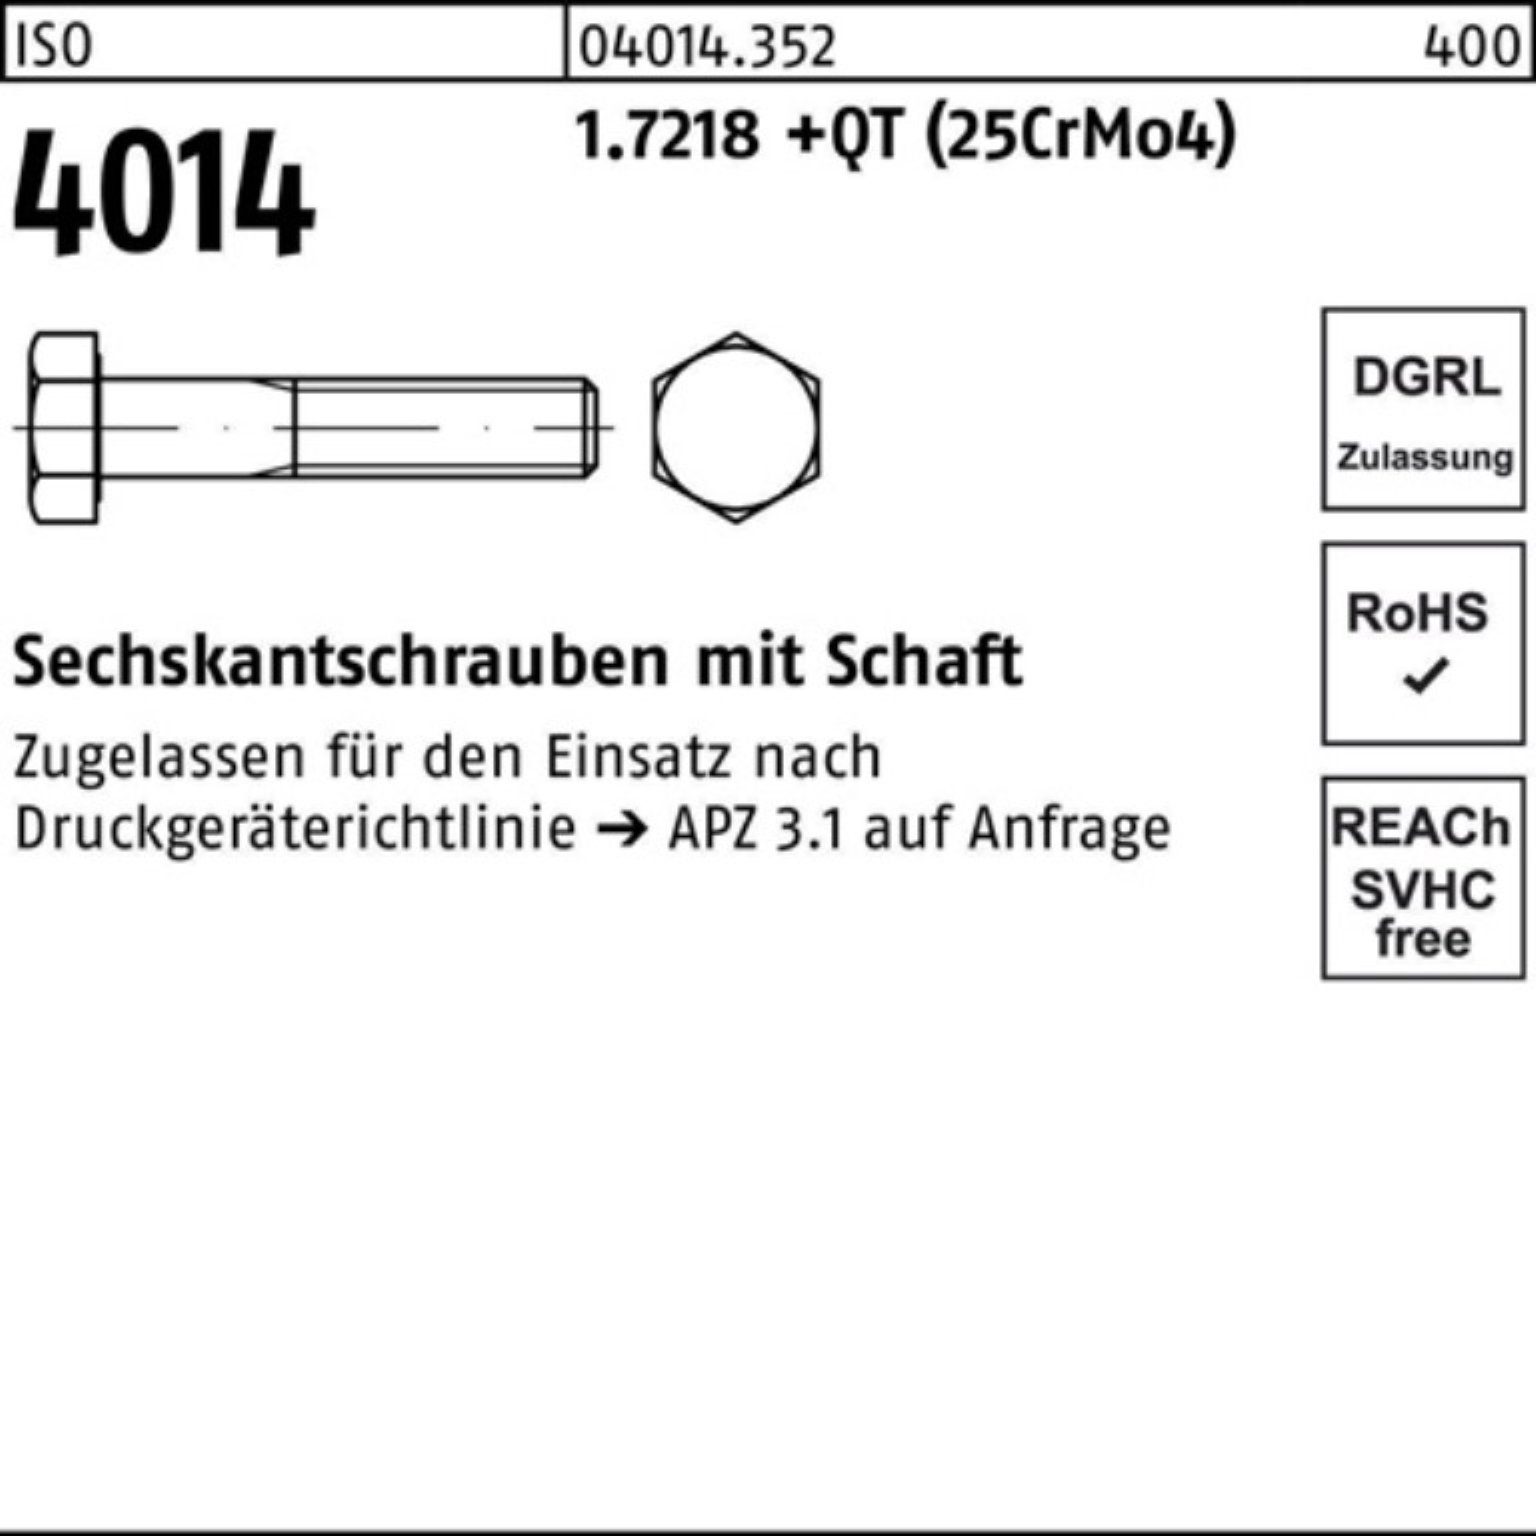 Sechskantschraube M36x 4014 Pack (25Cr 1.7218 Schaft Sechskantschraube ISO 140 +QT 100er Bufab